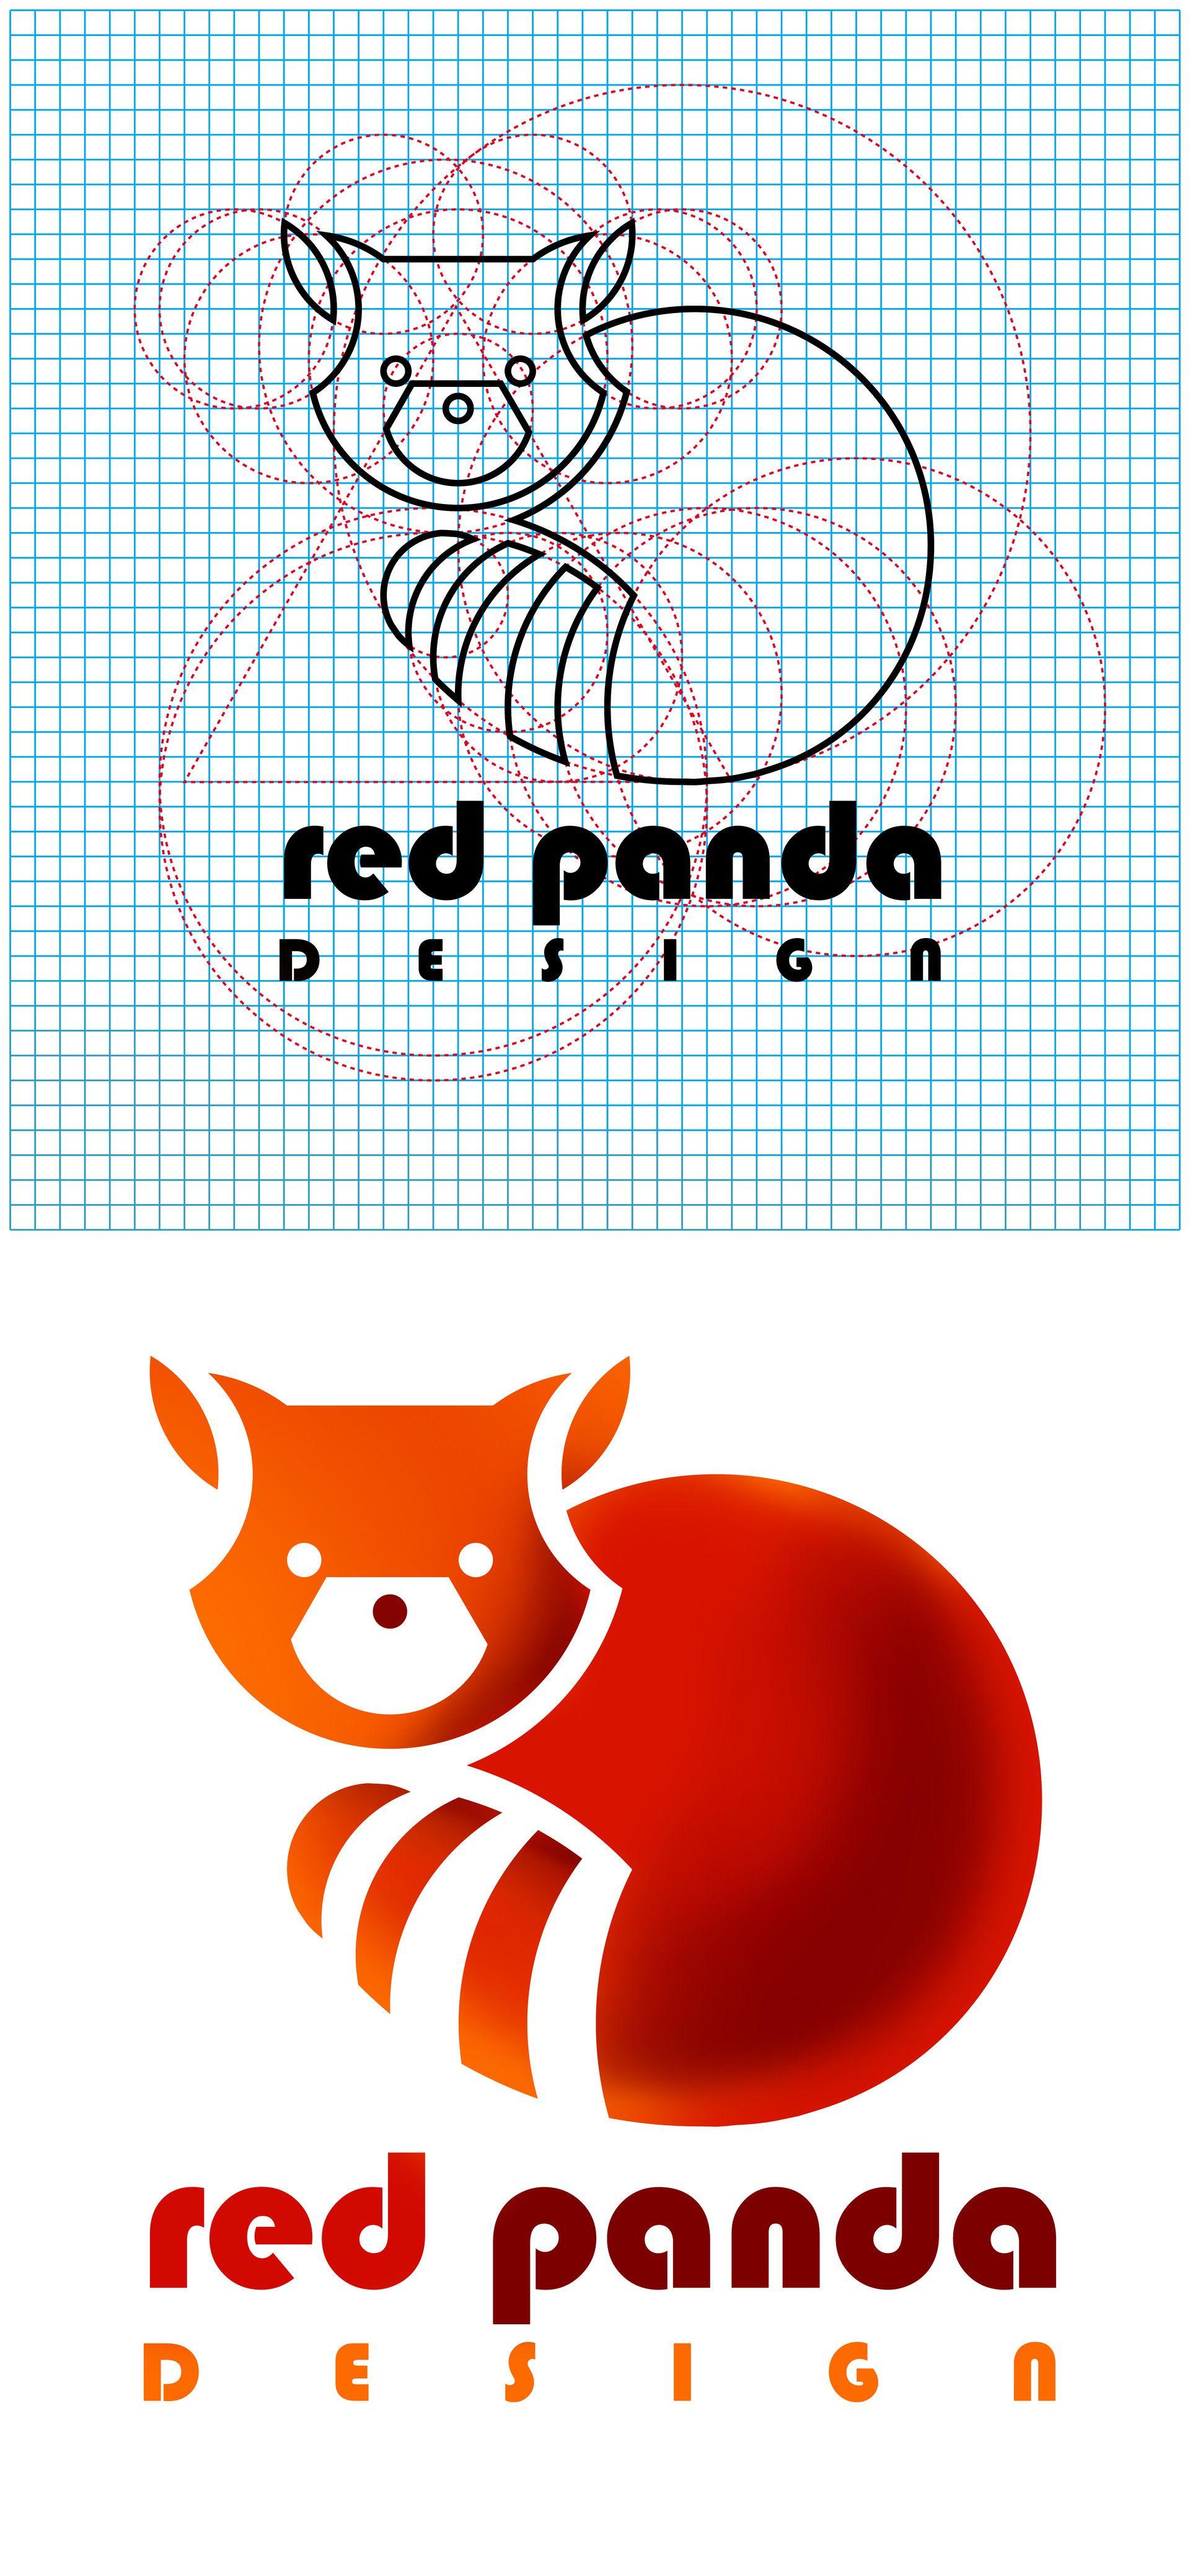 Red Panda Logo - logo red panda, david grez